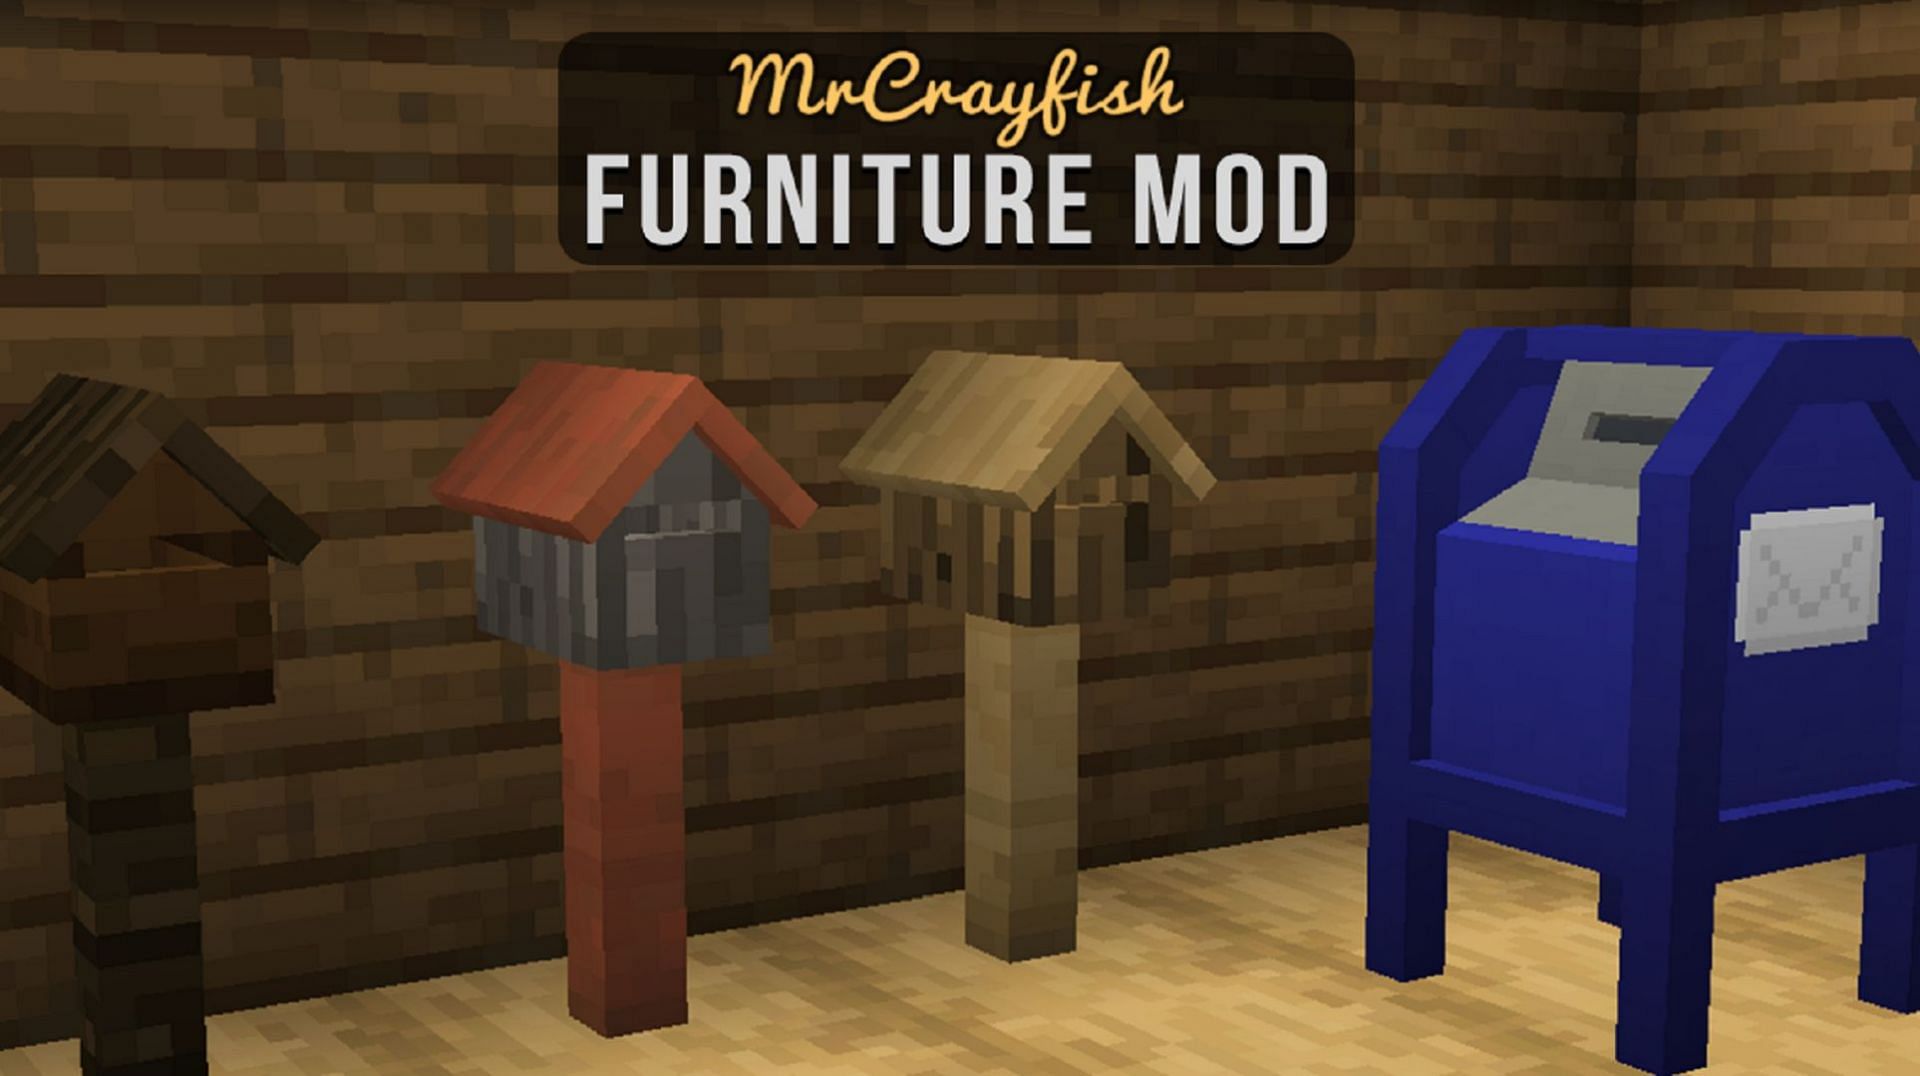 Различные почтовые ящики, реализованные в моде мебели MrCrayfish#039;s (изображение через MrCrayfish/CurseForge)